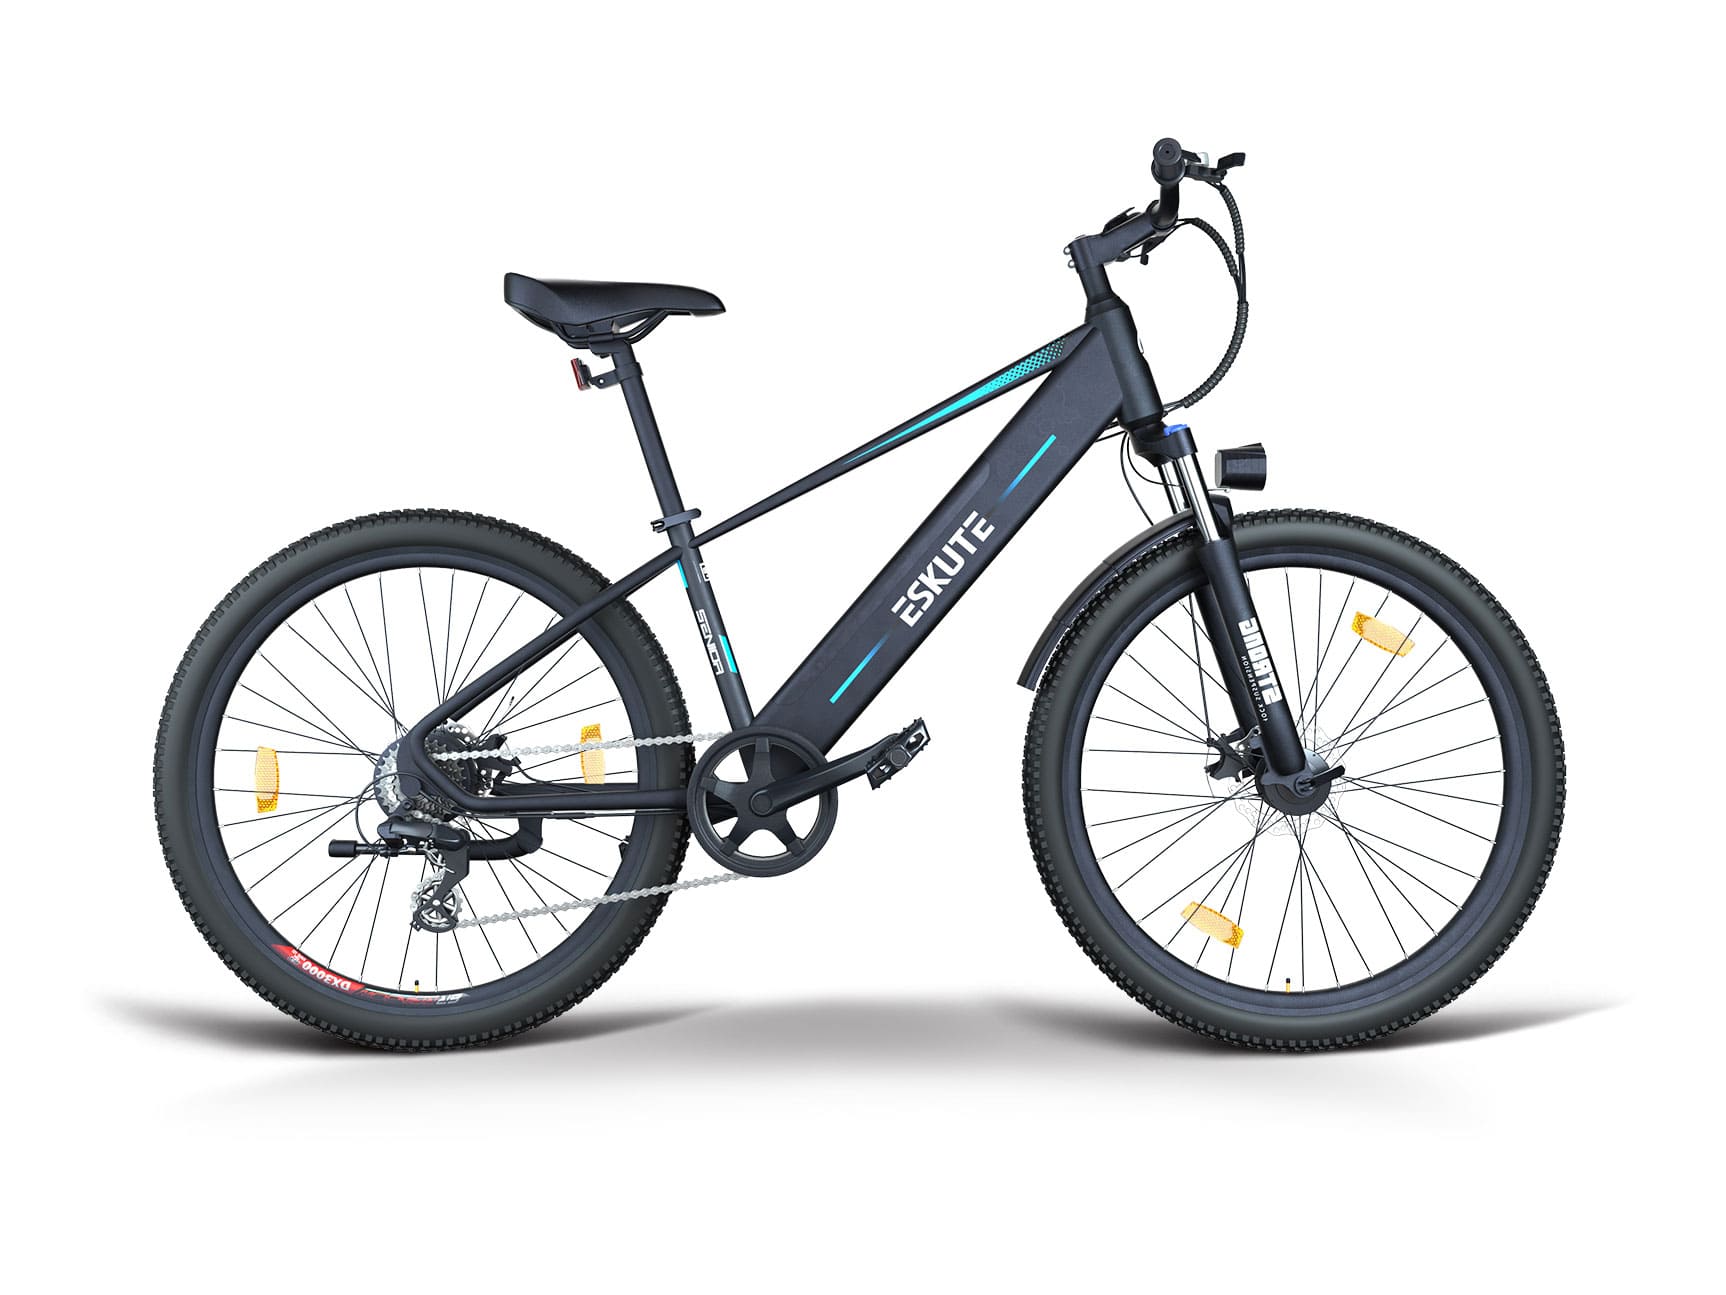 Voyager E-Mountainbike Gebrauchtes E-Bike 450Wh 80km Reichweite